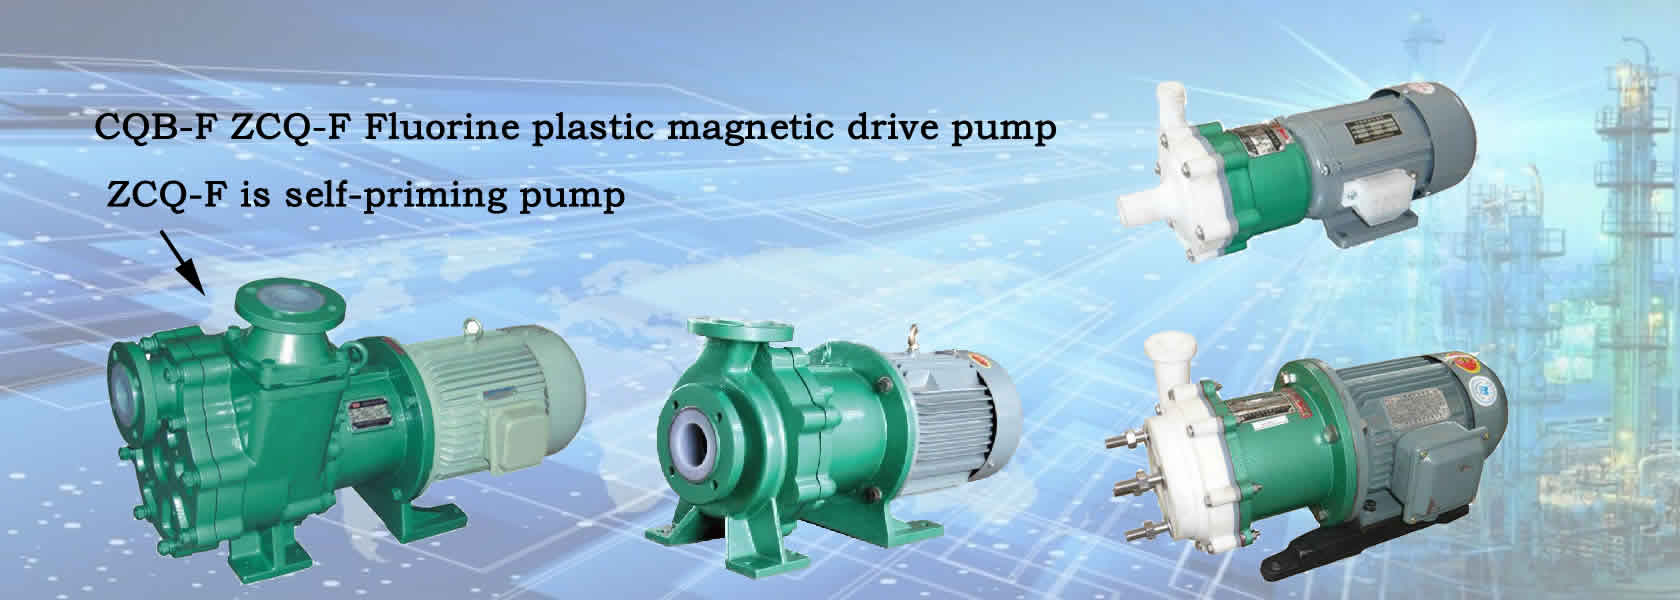 CQB-F ZCQ-F Fluorine plastic magnetic drive pump